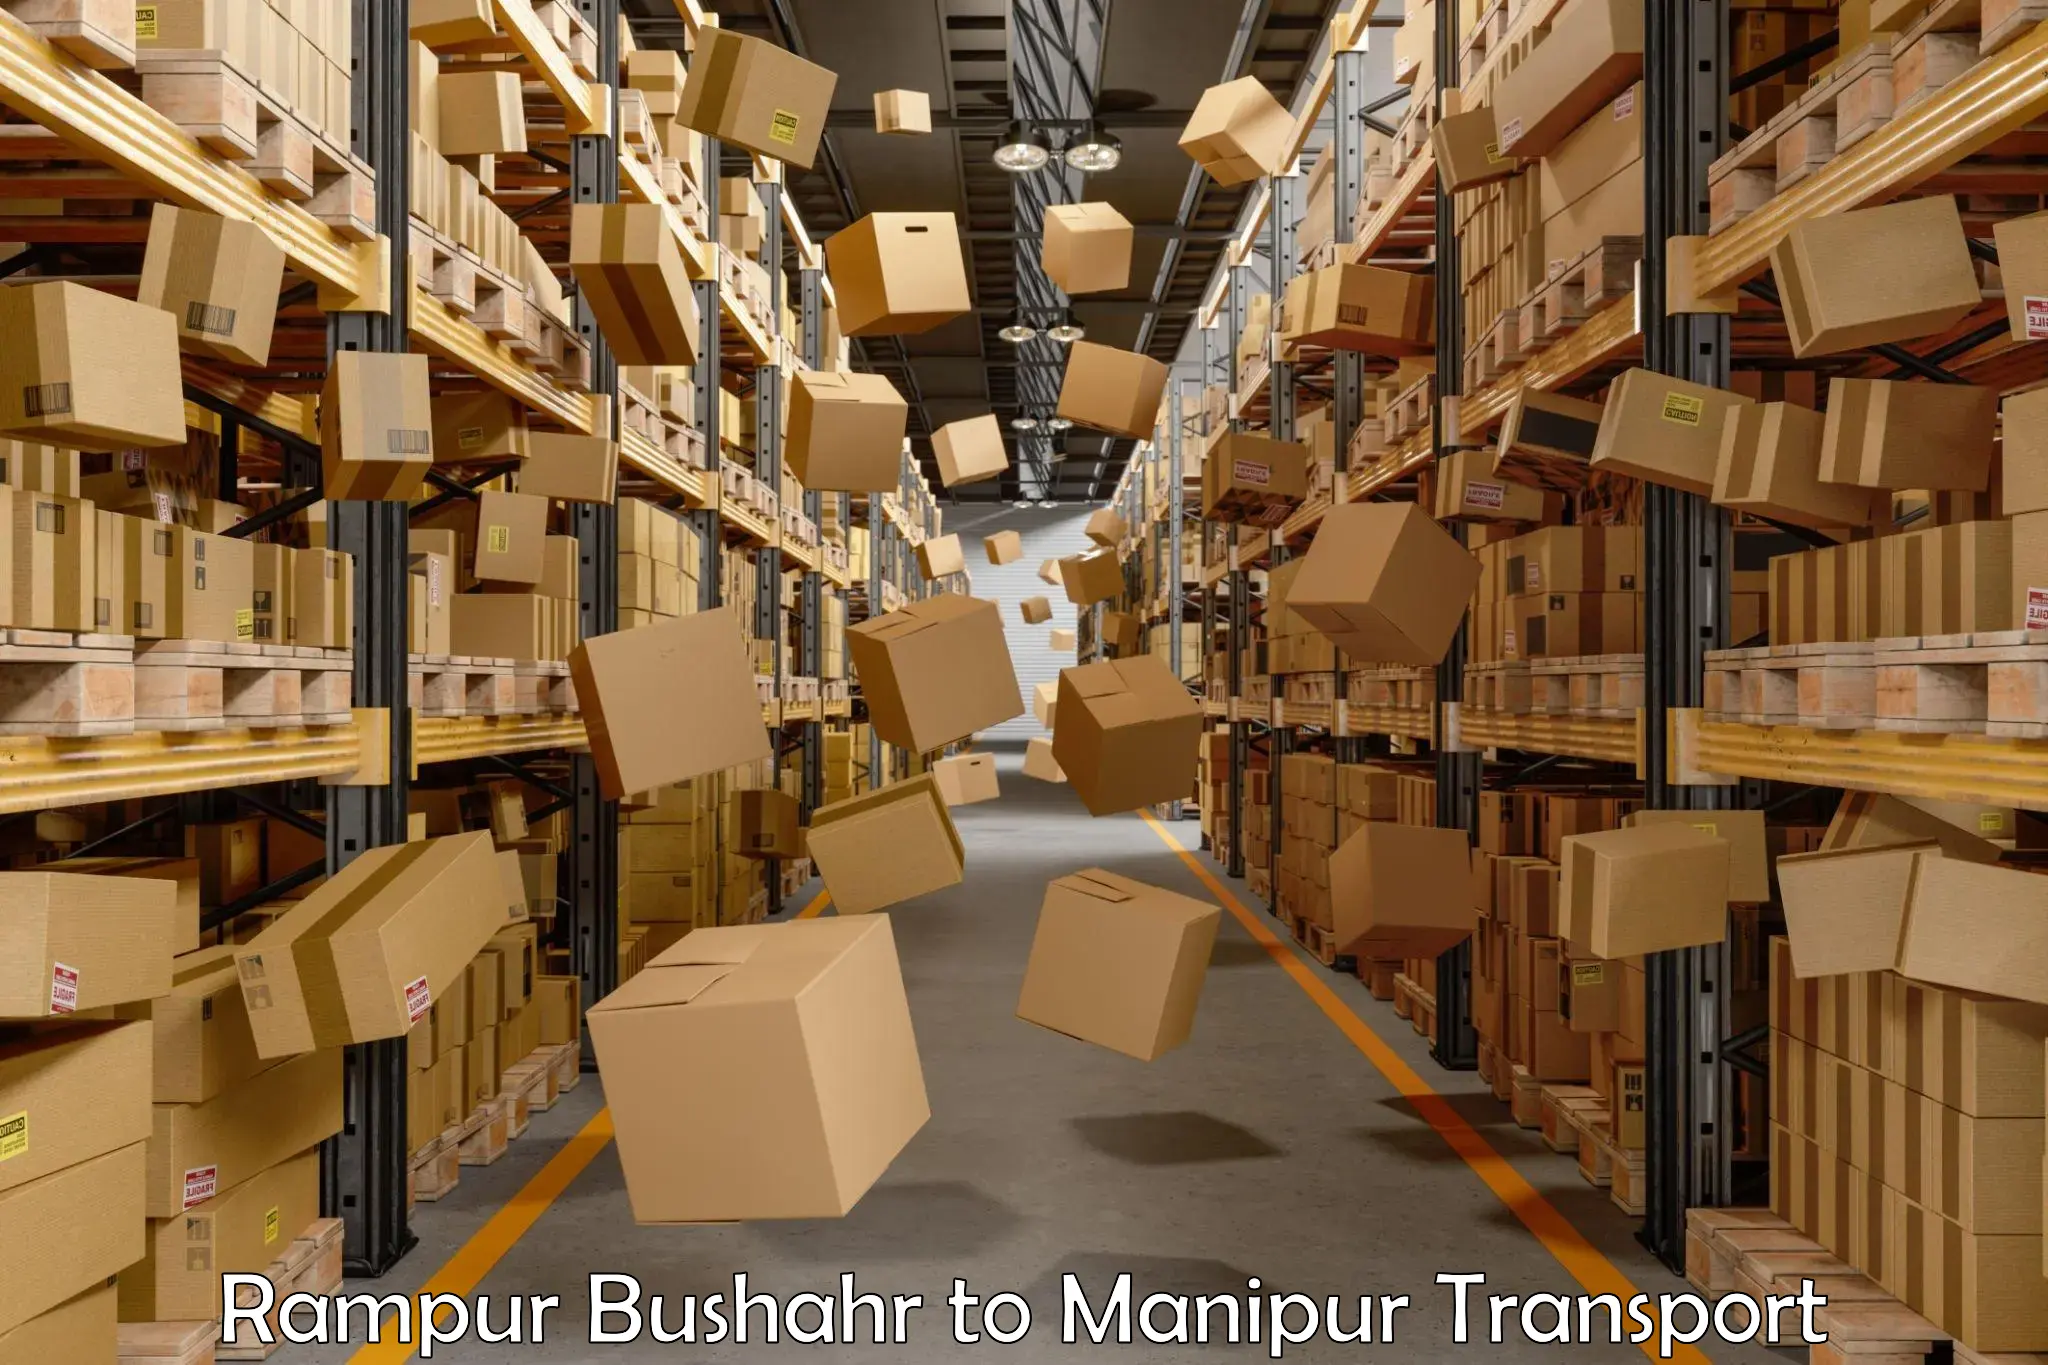 Furniture transport service Rampur Bushahr to Chandel